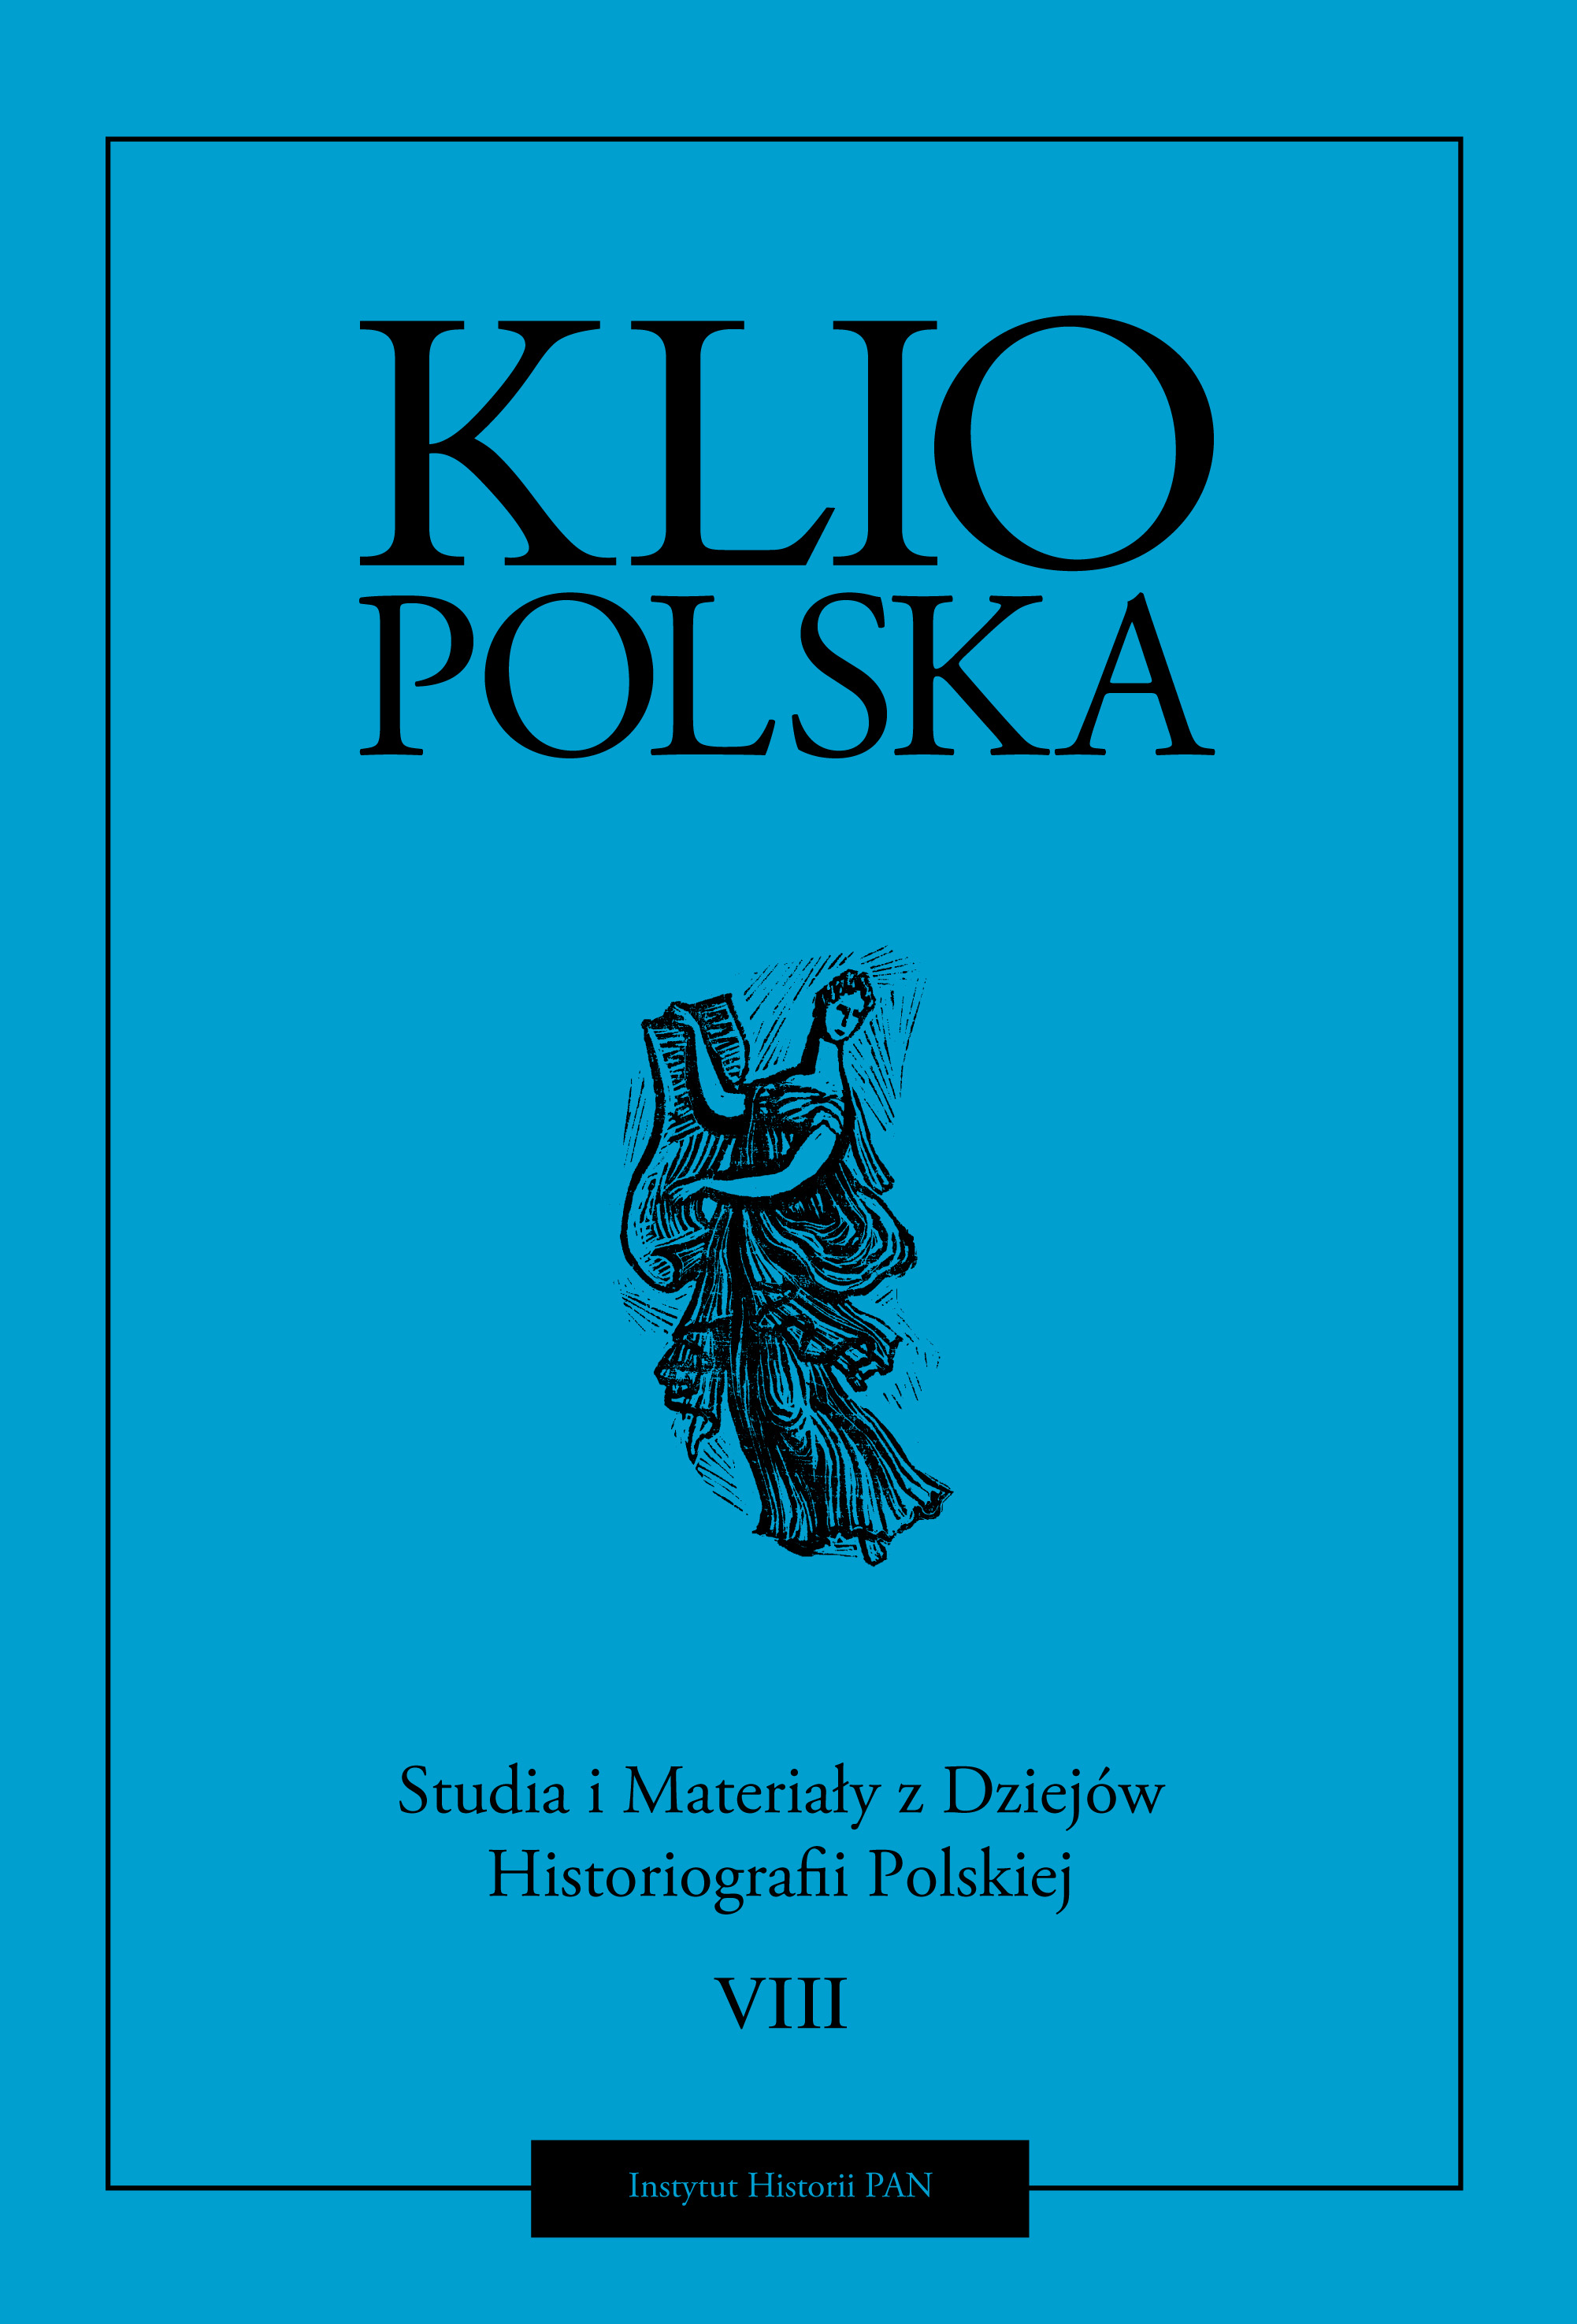 Klio Polska. Studia i Materiały z Dziejów Historiografii Polskiej